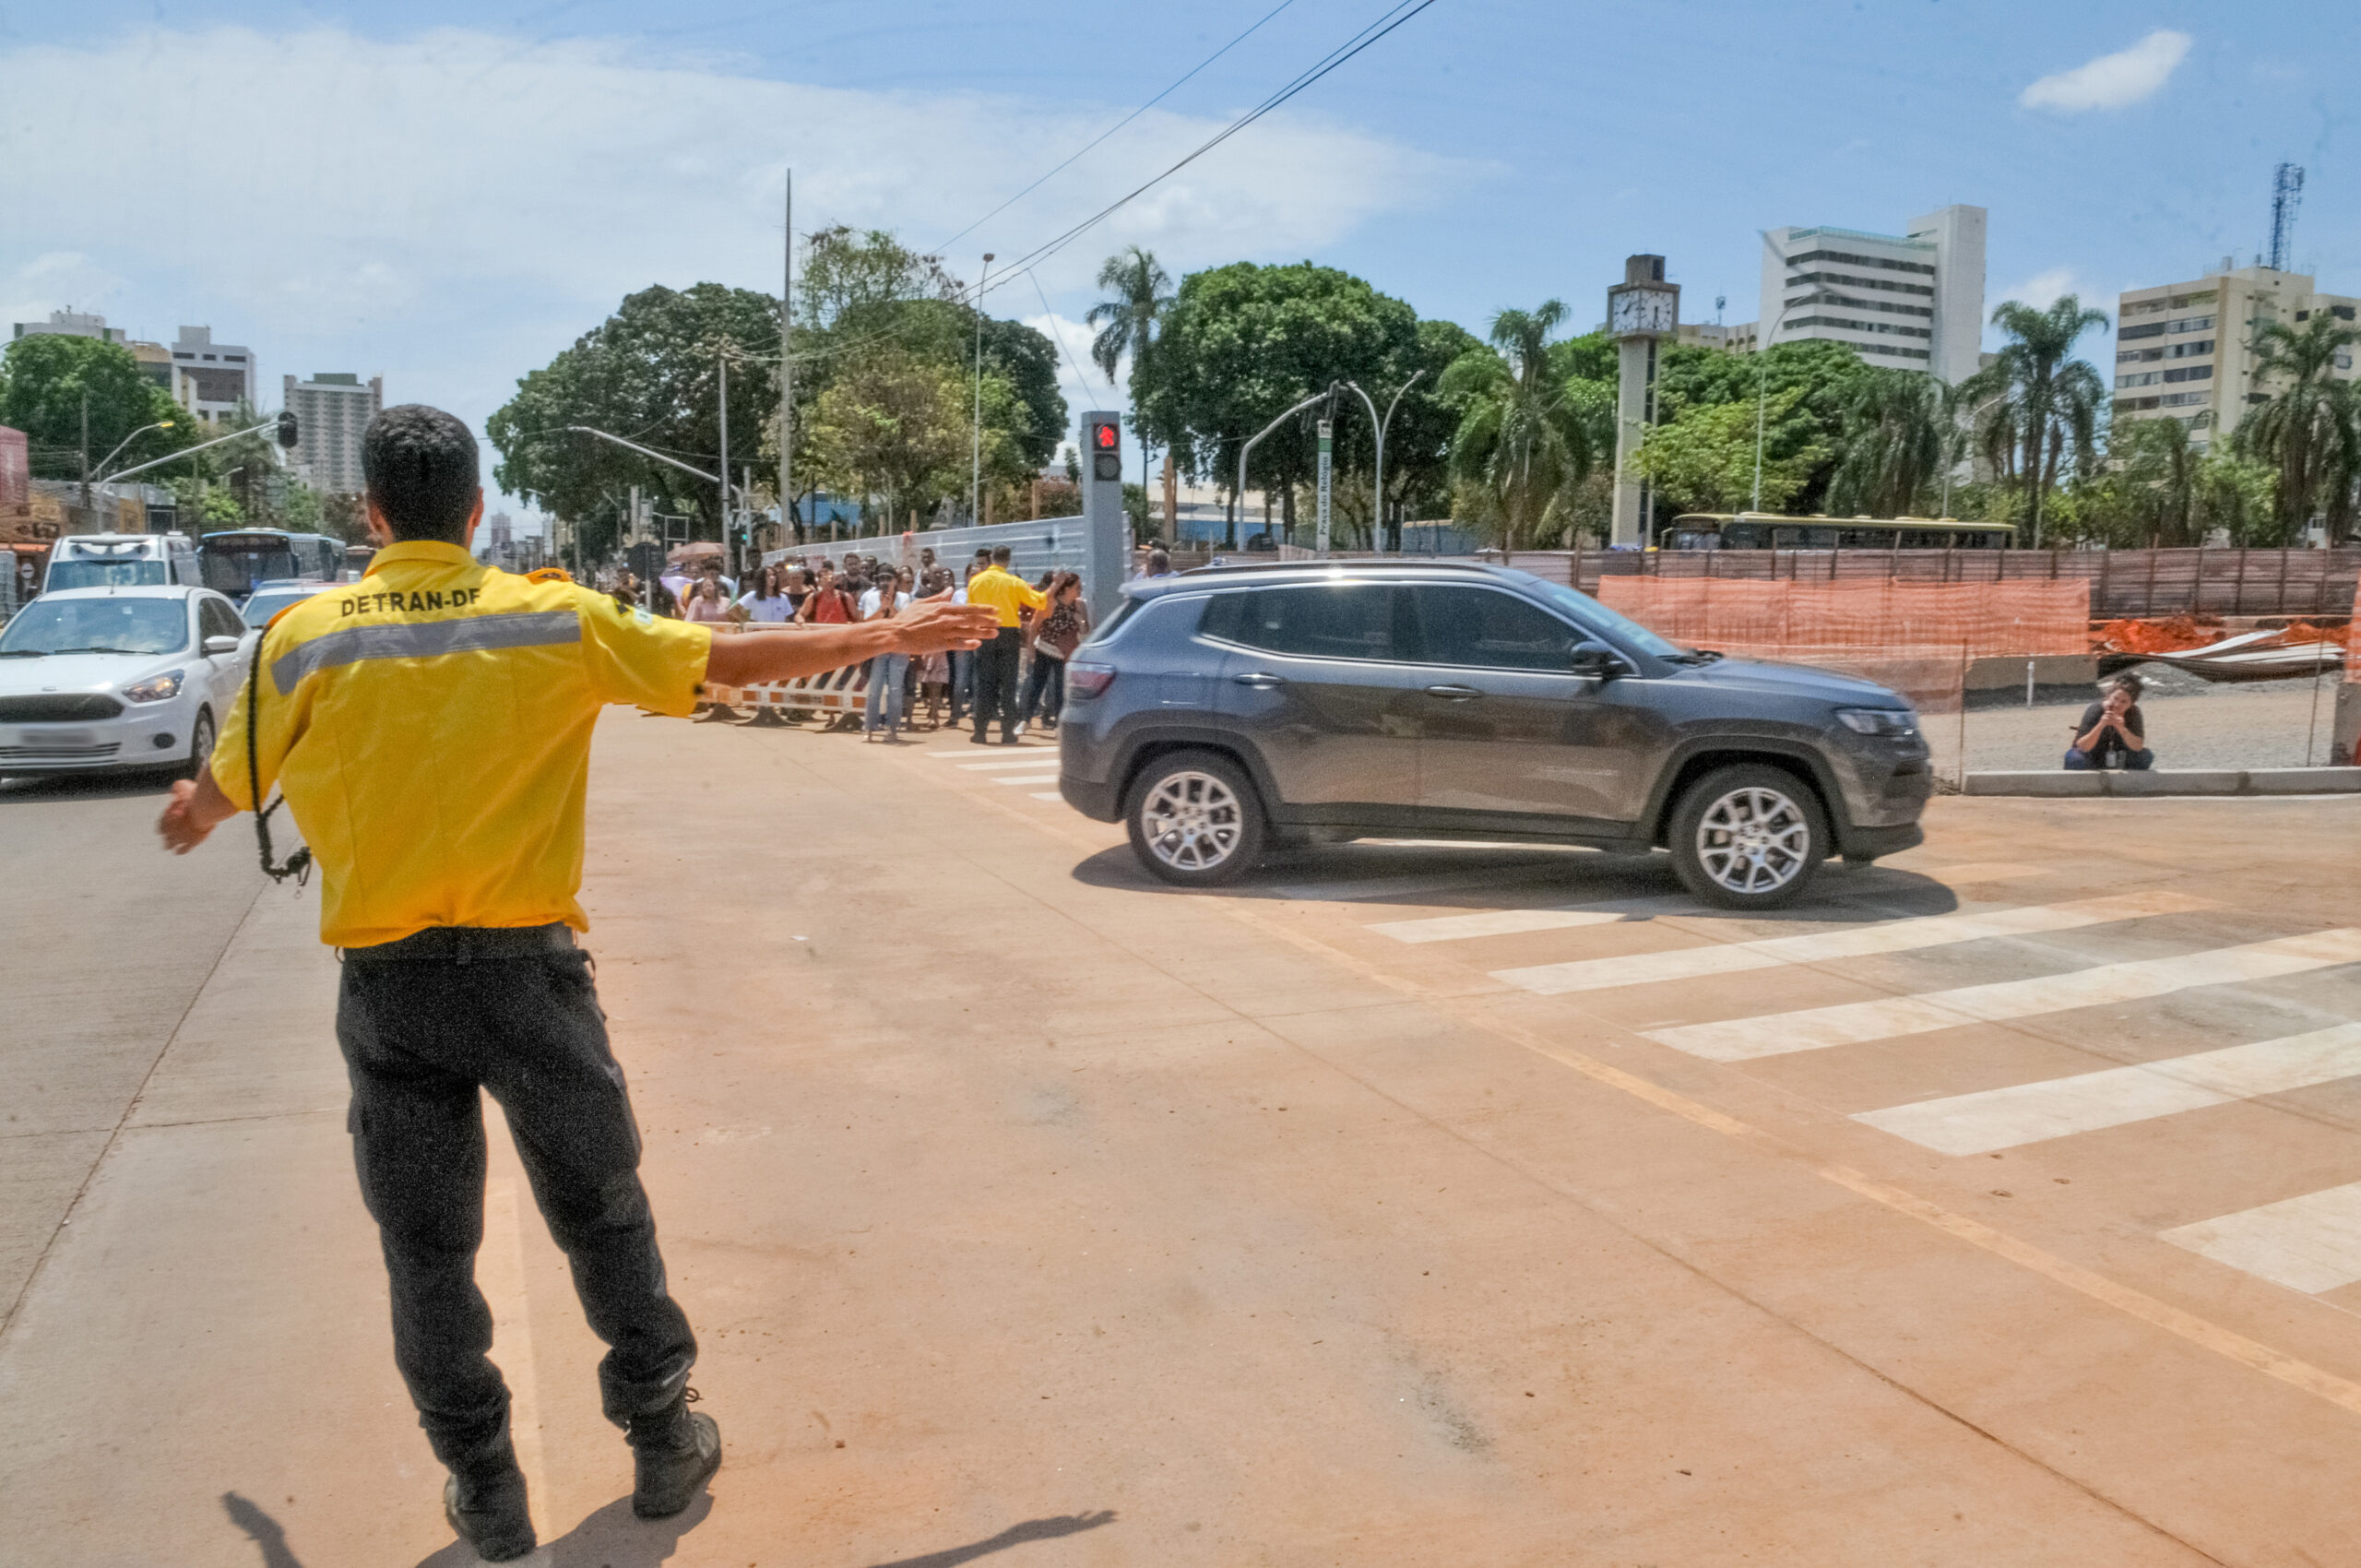 Liberado mais um trecho que havia sido interditado para as obras do Túnel de Taguatinga | Fotos: Joel Rodrigues/Agência Brasília